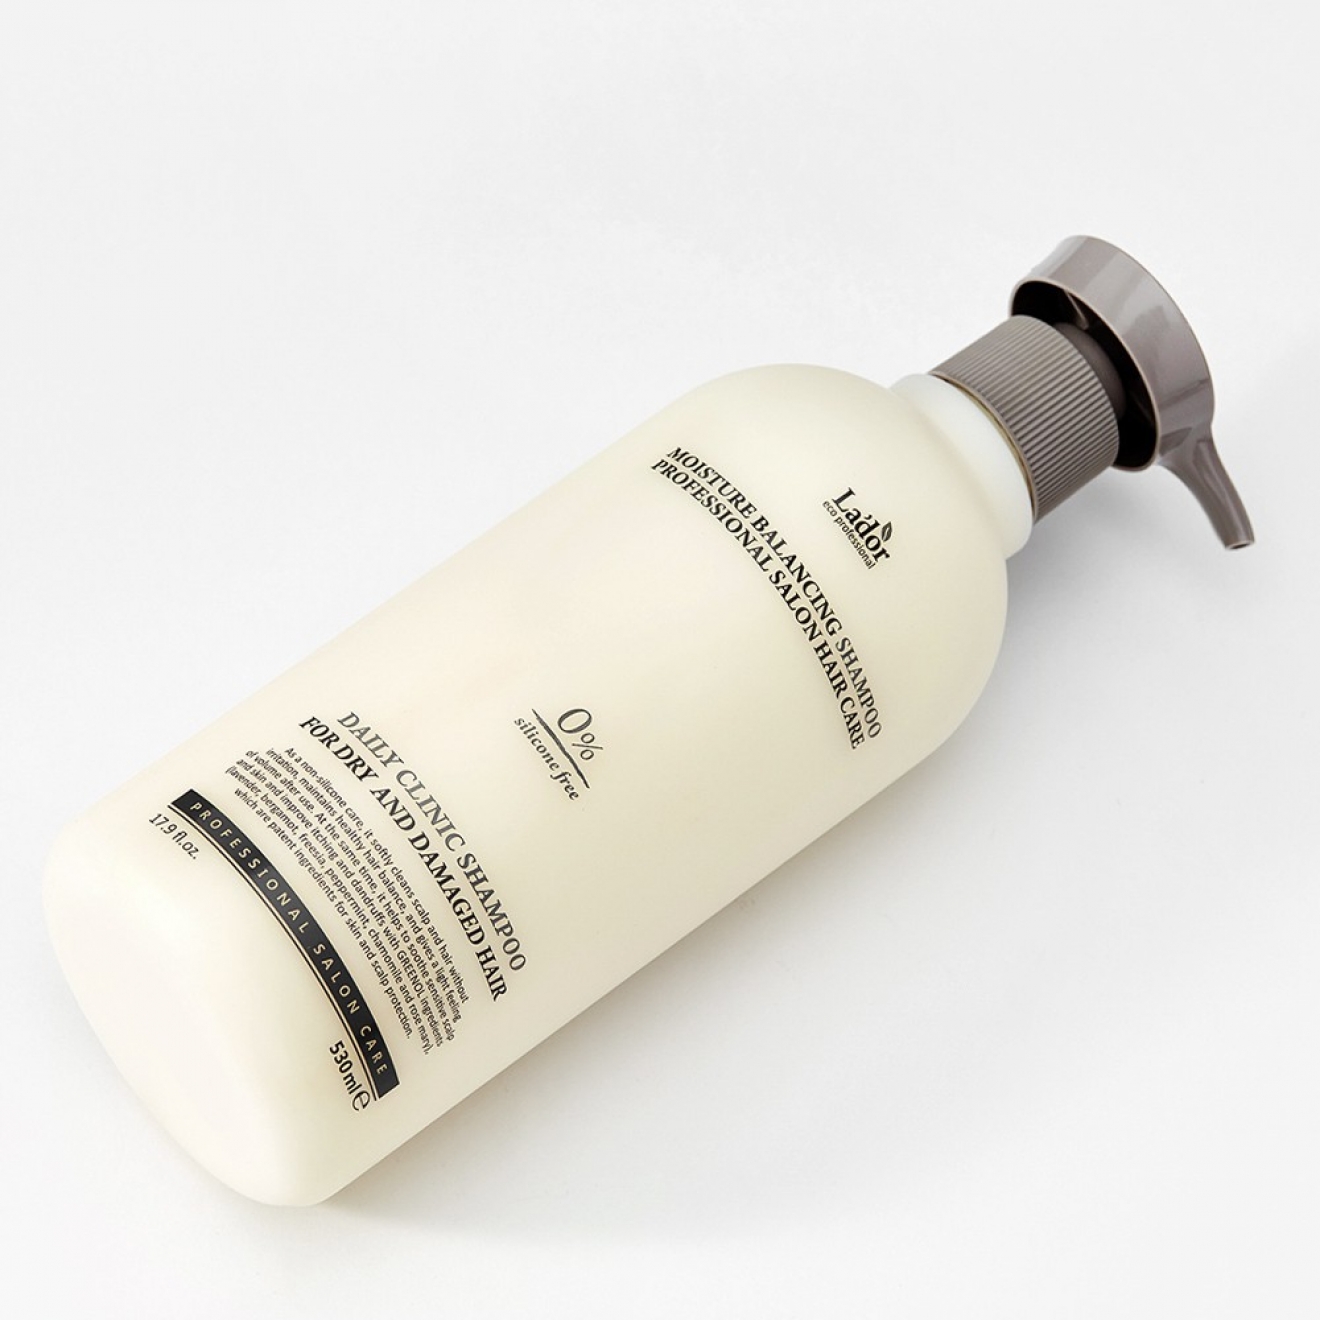 Sampon-Lador Moisture Balancing Shampoo, 530ml